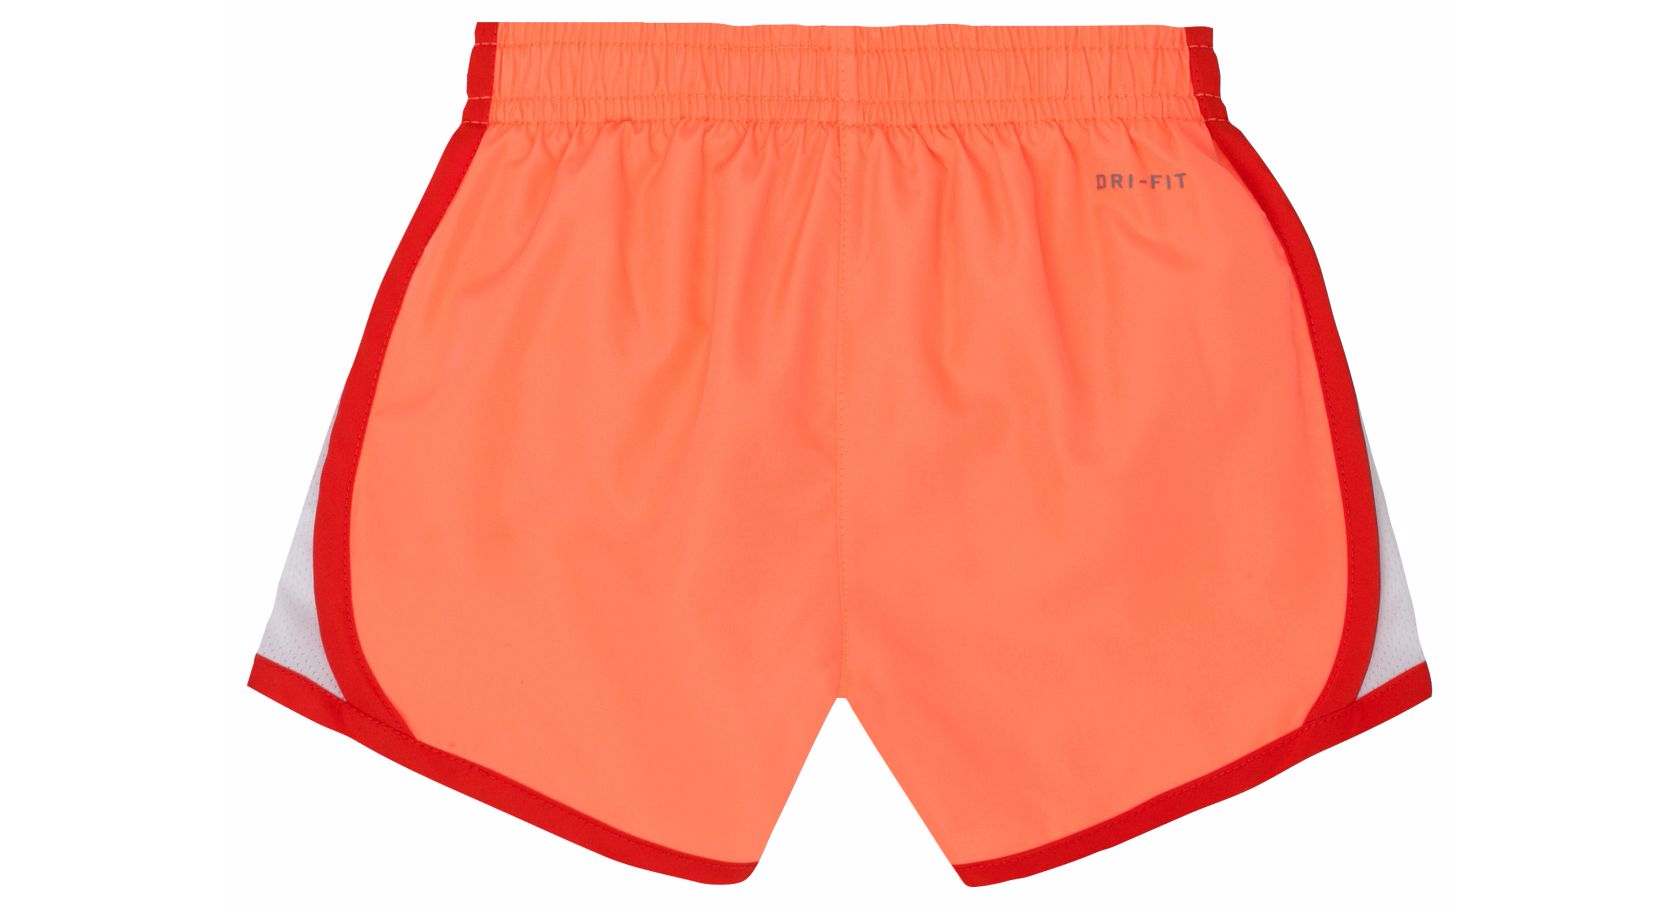 orange running shorts nike adidas png download 42519